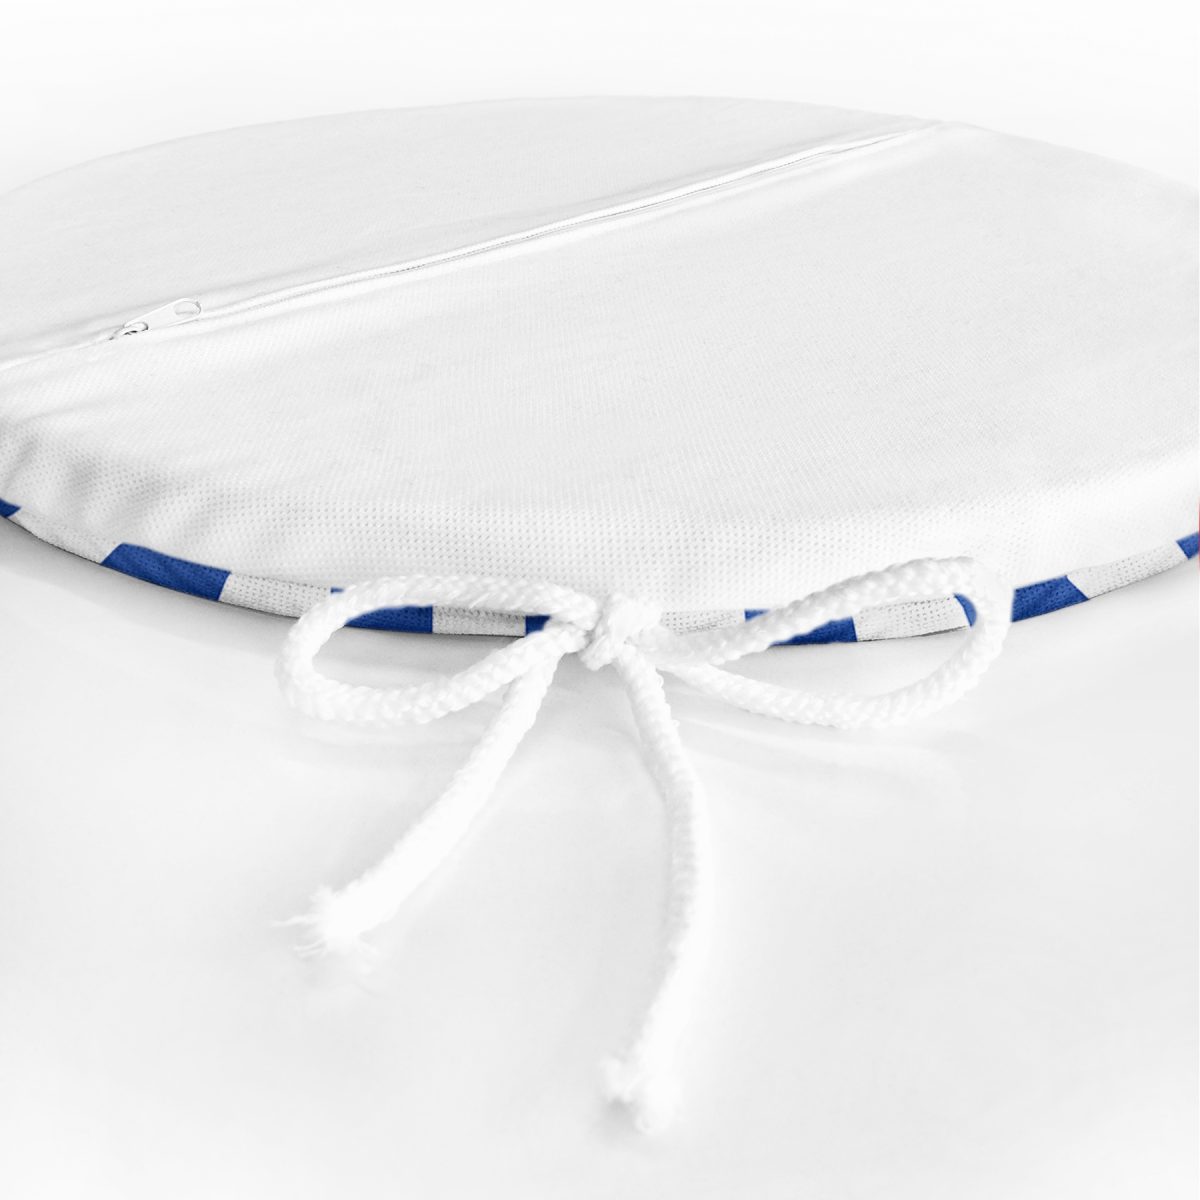 Lacivert Beyaz Düz Çizgi Tasarımlı Dijital Baskılı Yuvarlak Fermuarlı Sandalye Minderi Realhomes